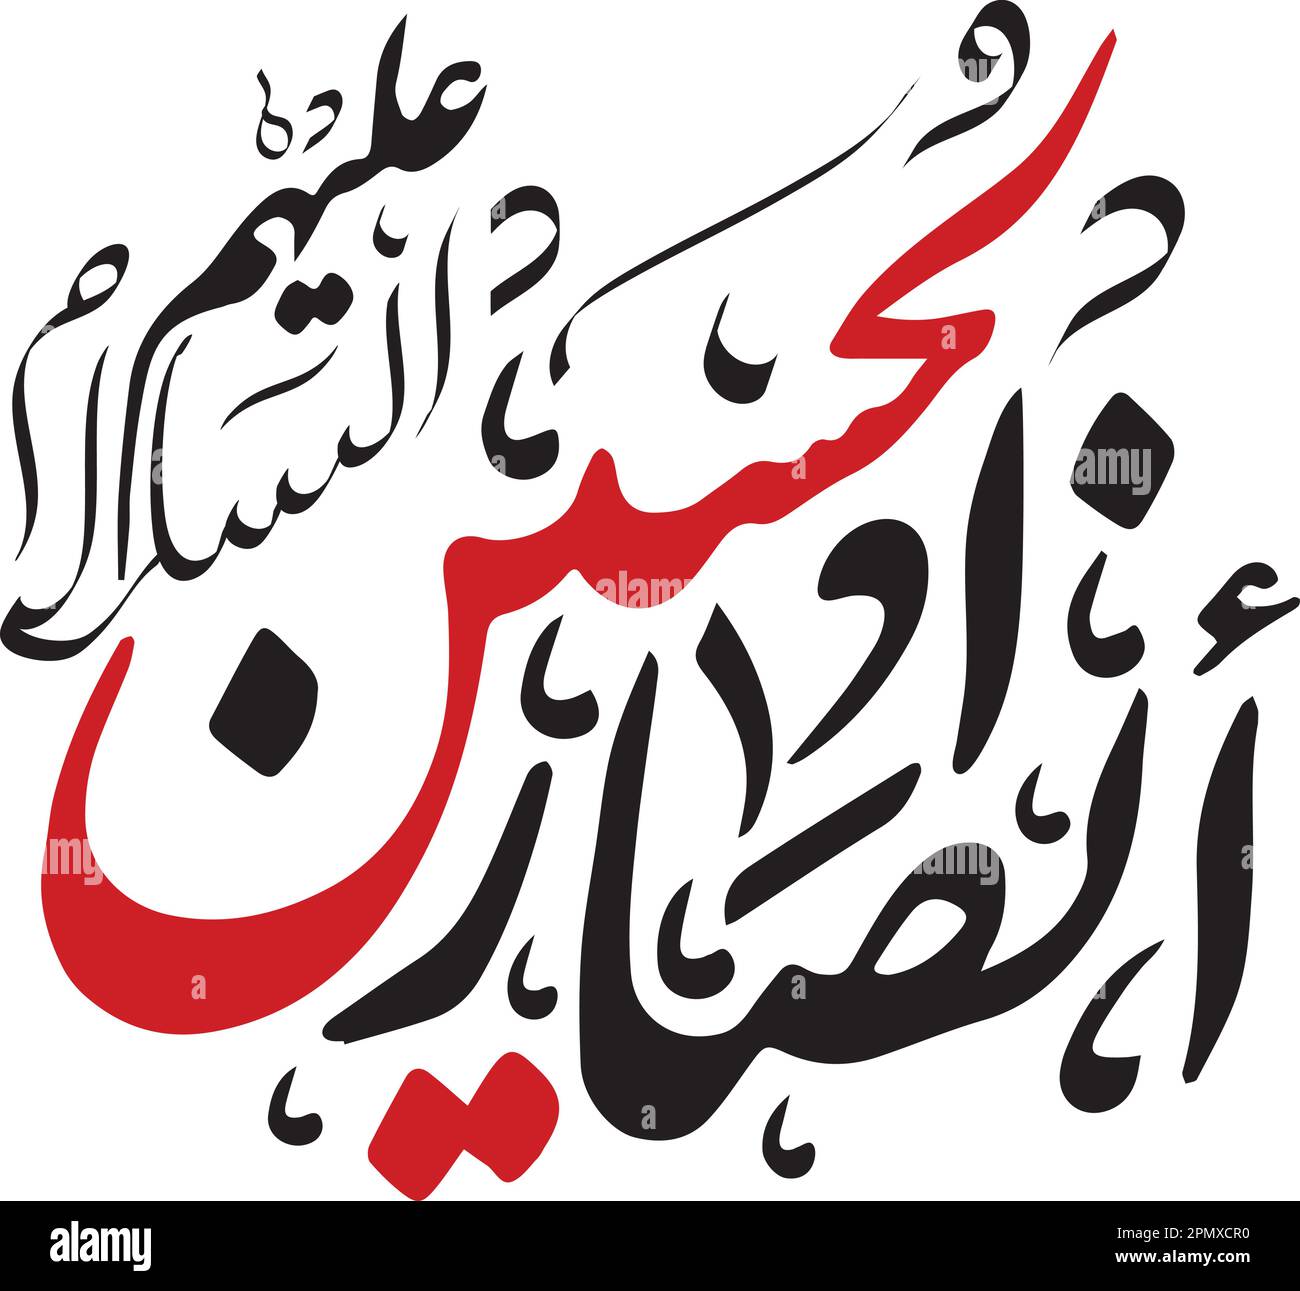 La calligrafia e la tipografia araba Ansar Imam Hussain Karbala nei colori nero e rosso Illustrazione Vettoriale